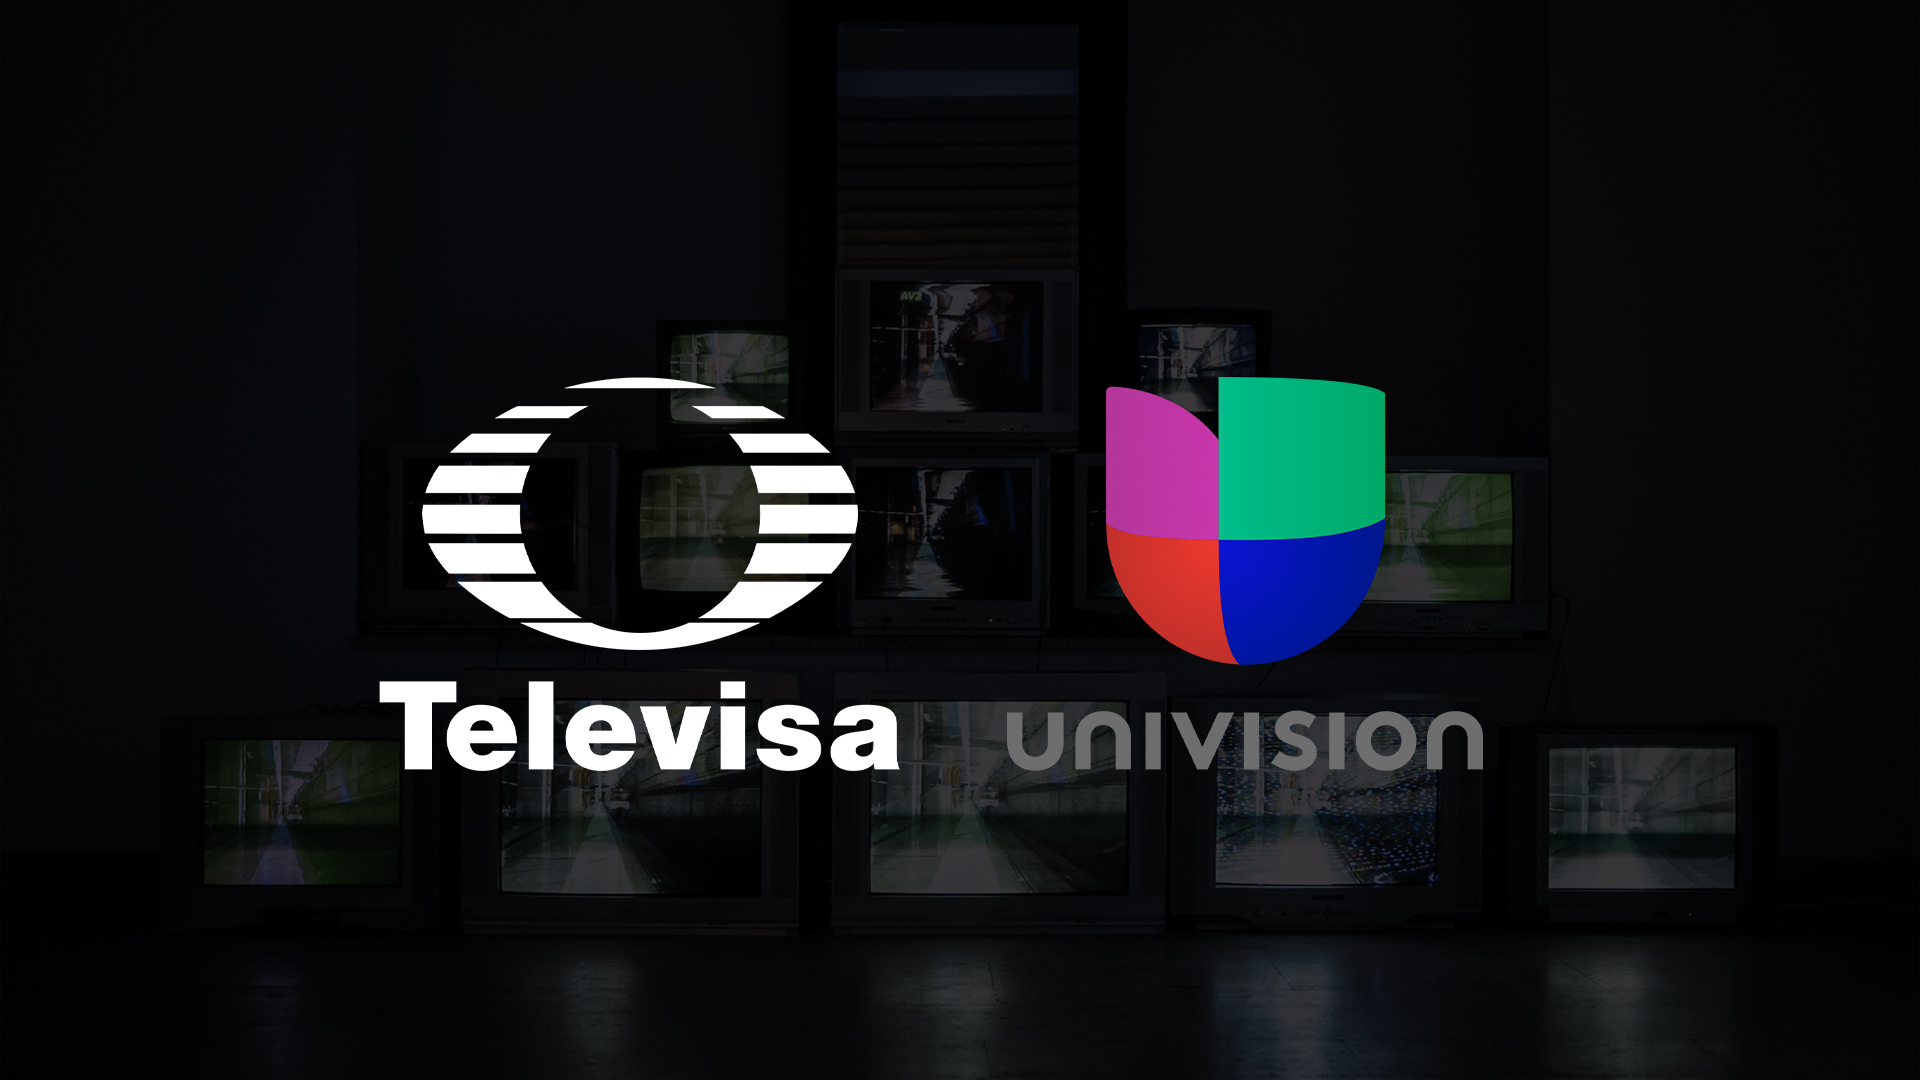 La alianza televisa Univisión